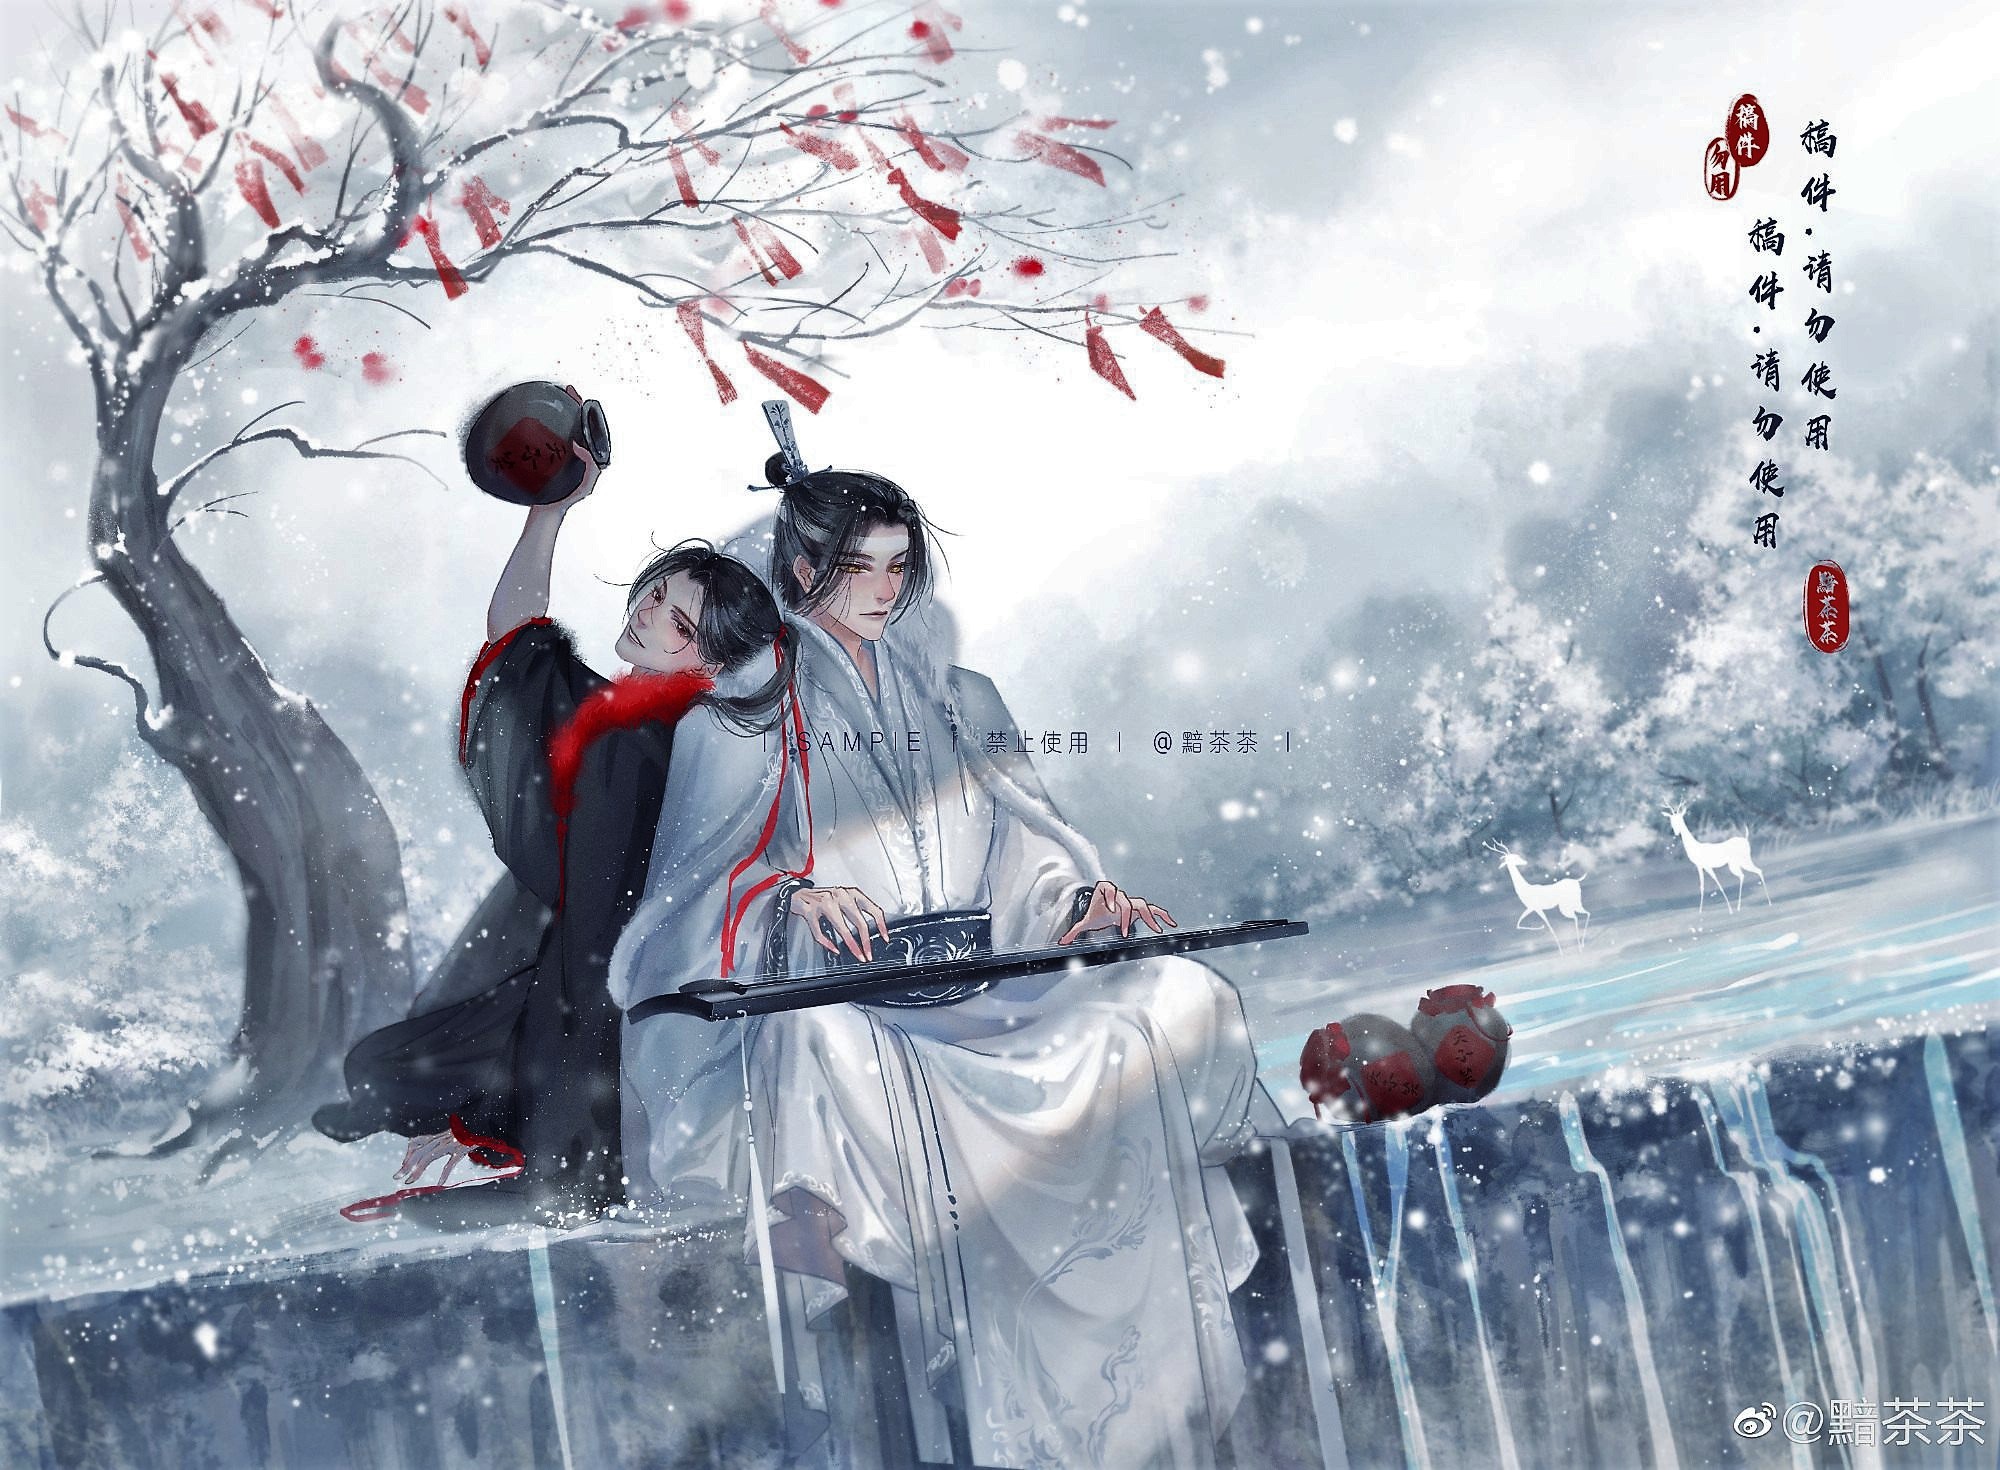 HD wallpaper: Anime, Mo Dao Zu Shi, Wei Wuxian